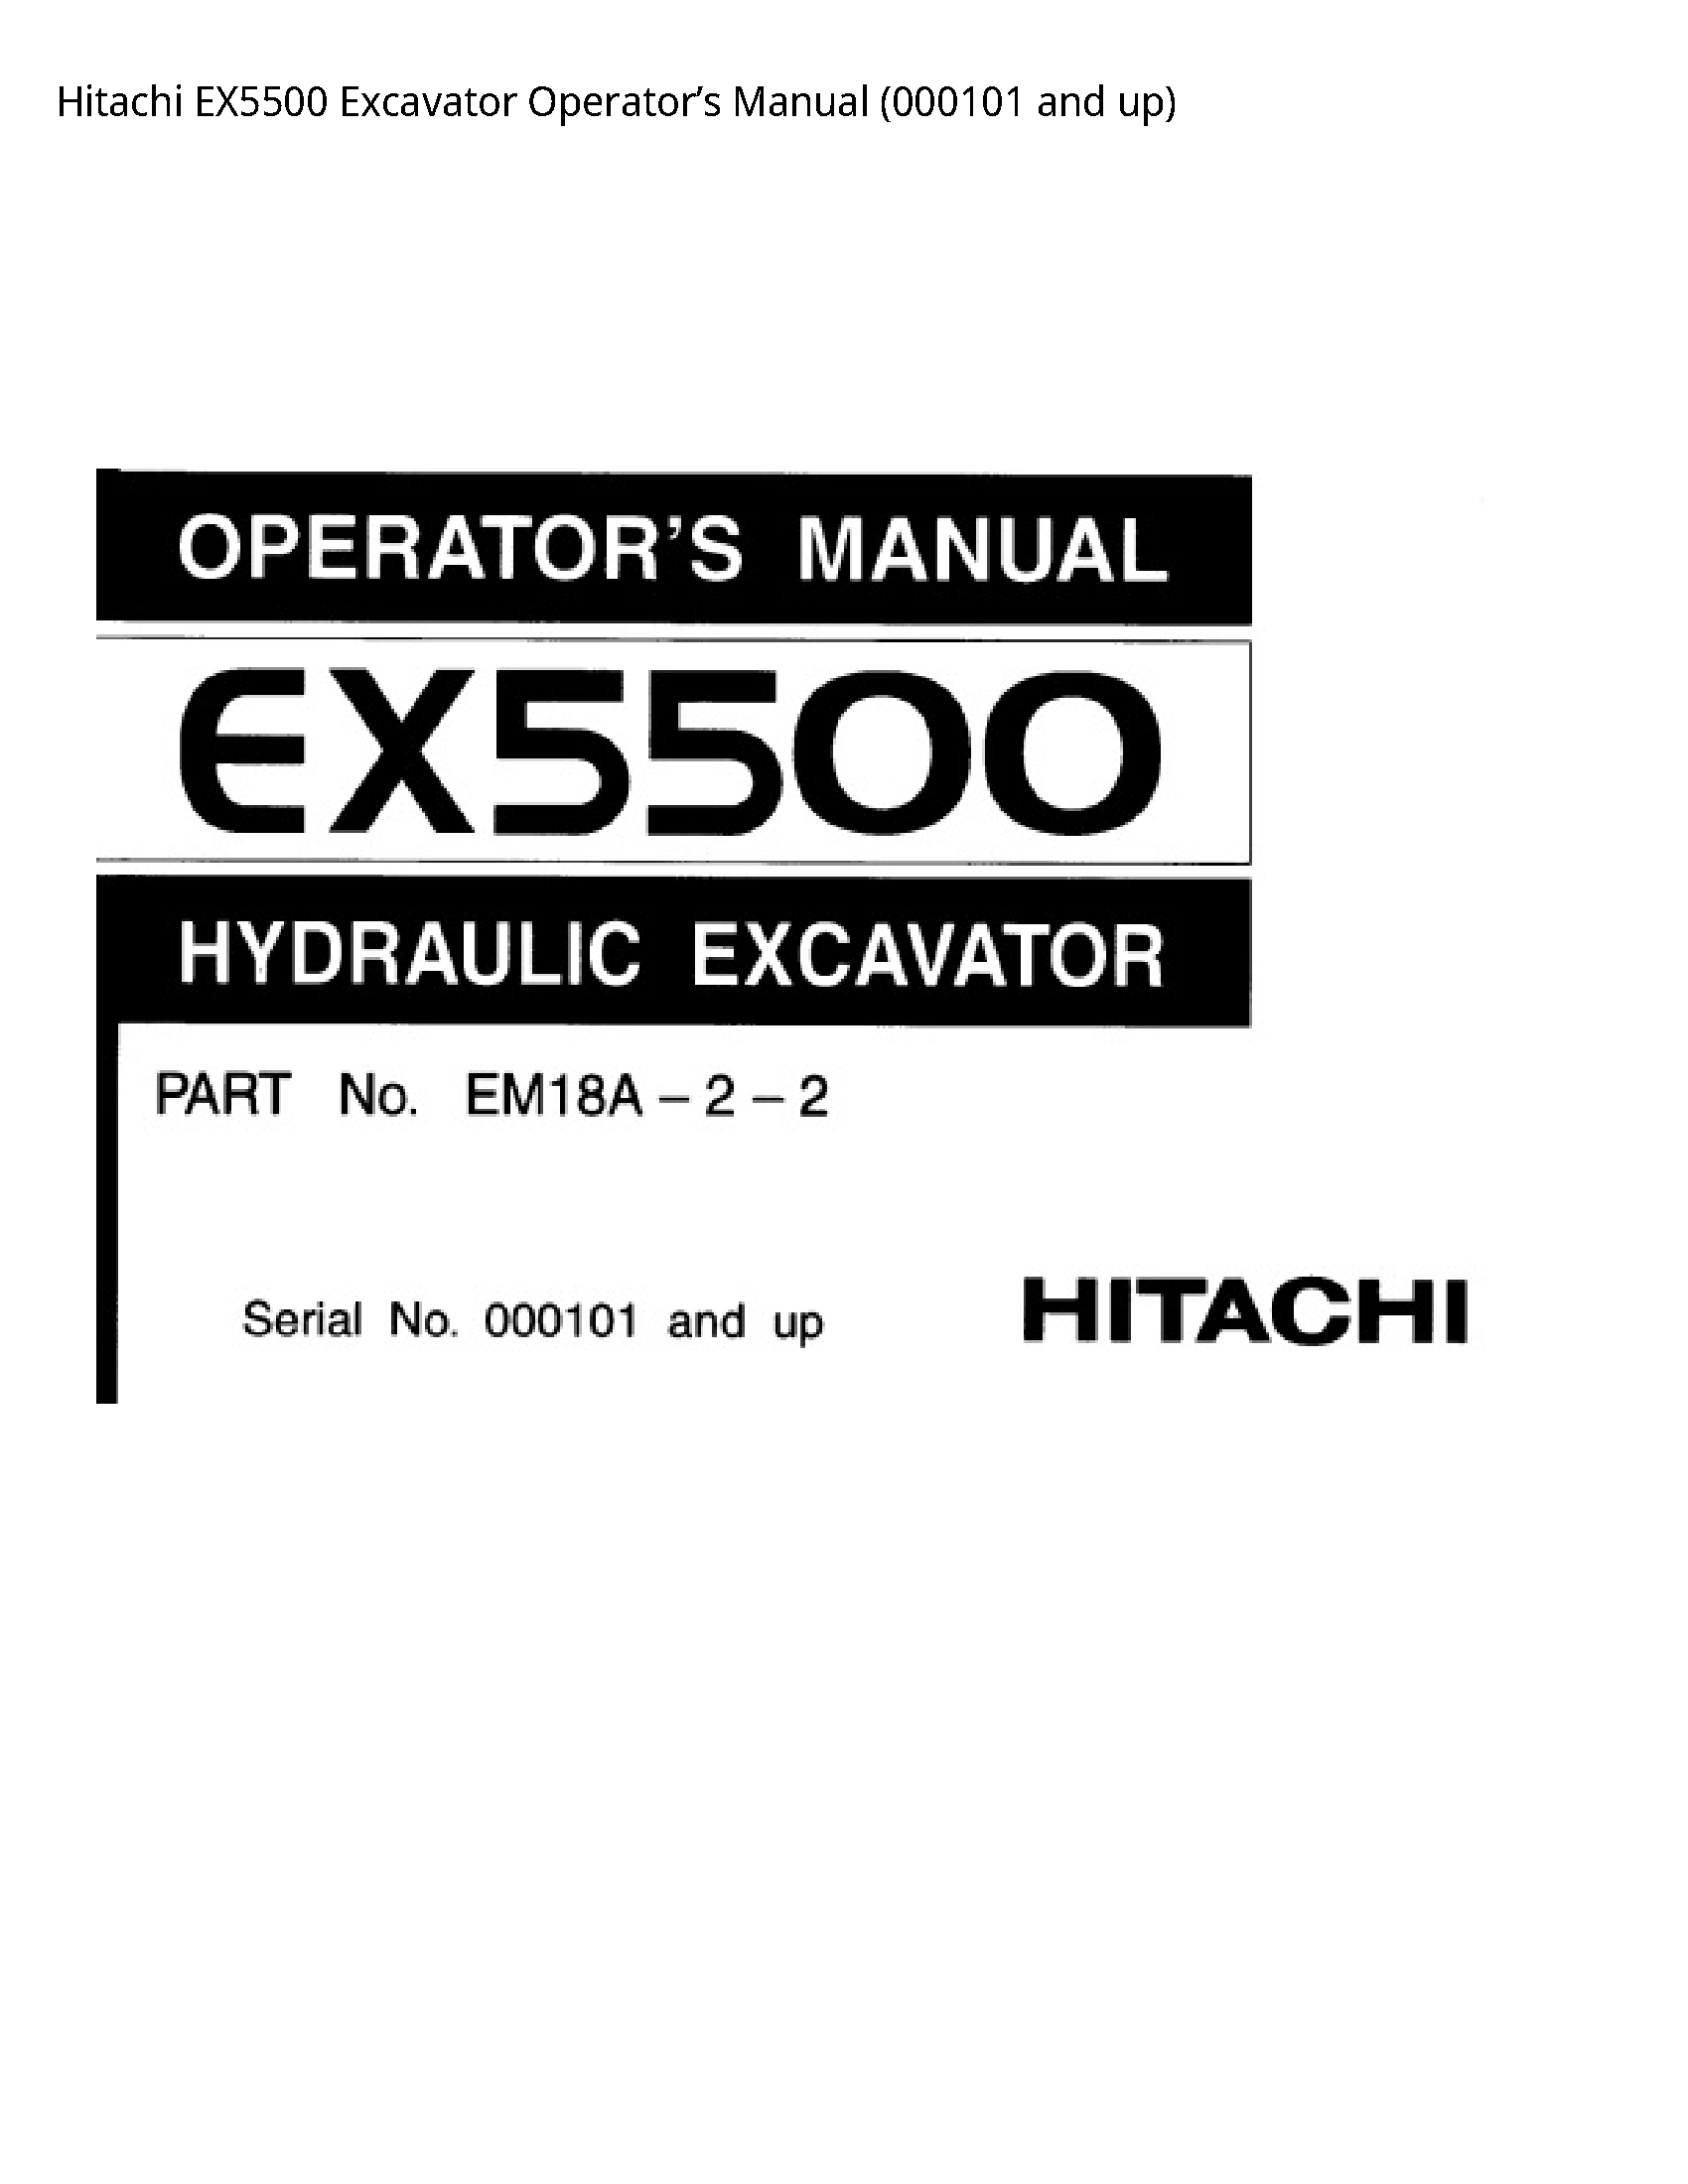 Hitachi EX5500 Excavator Operator’s manual